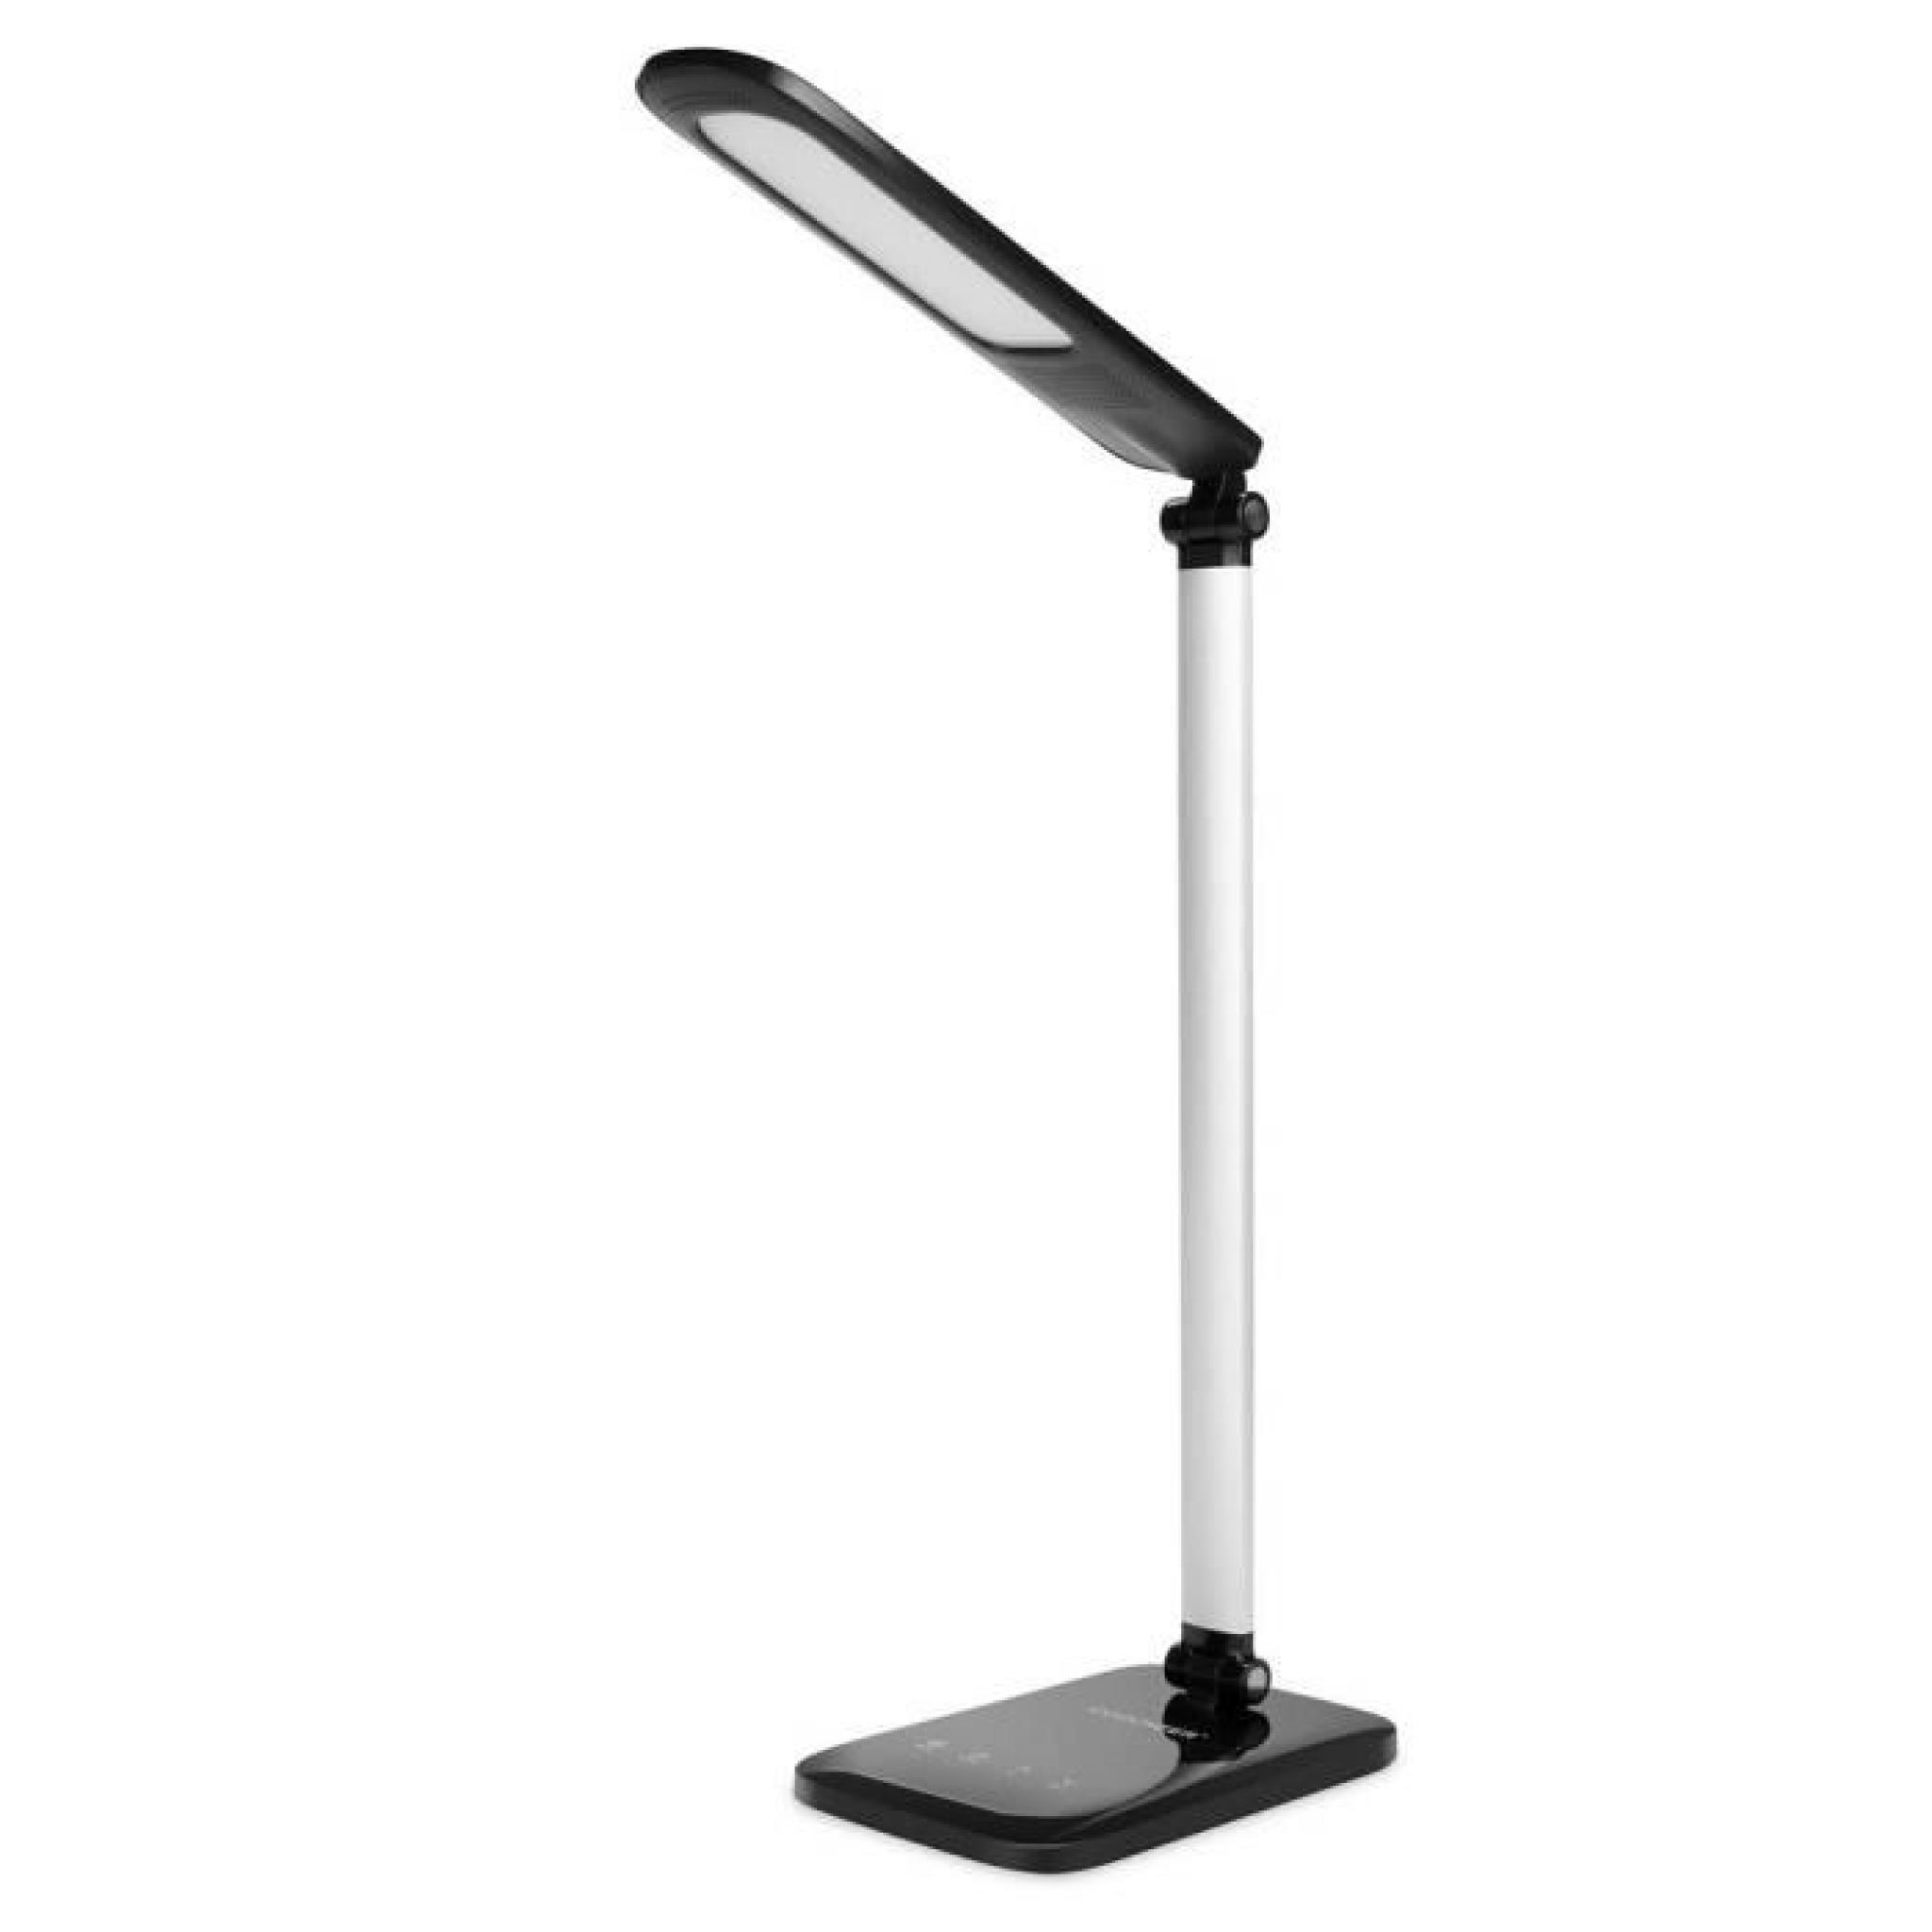 Lampe LED table Lamp multifonction oeil-Protection Desk niveau 5 -Black couleur